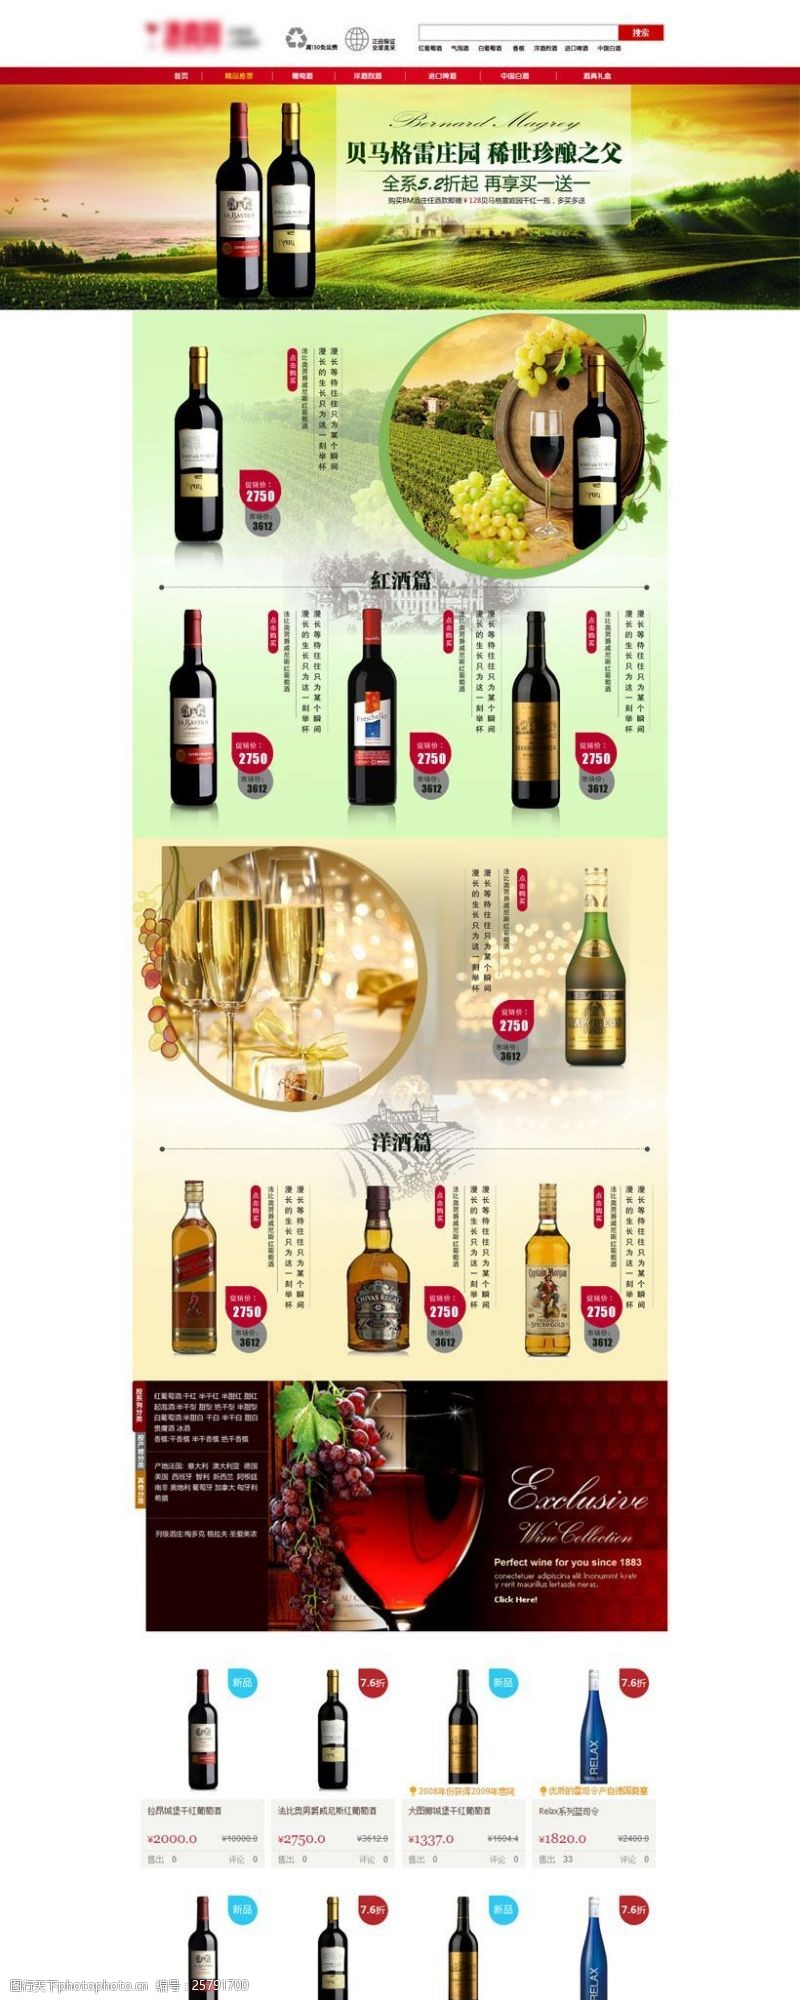 葡萄酒介绍淘宝进口葡萄酒促销页面设计PSD素材